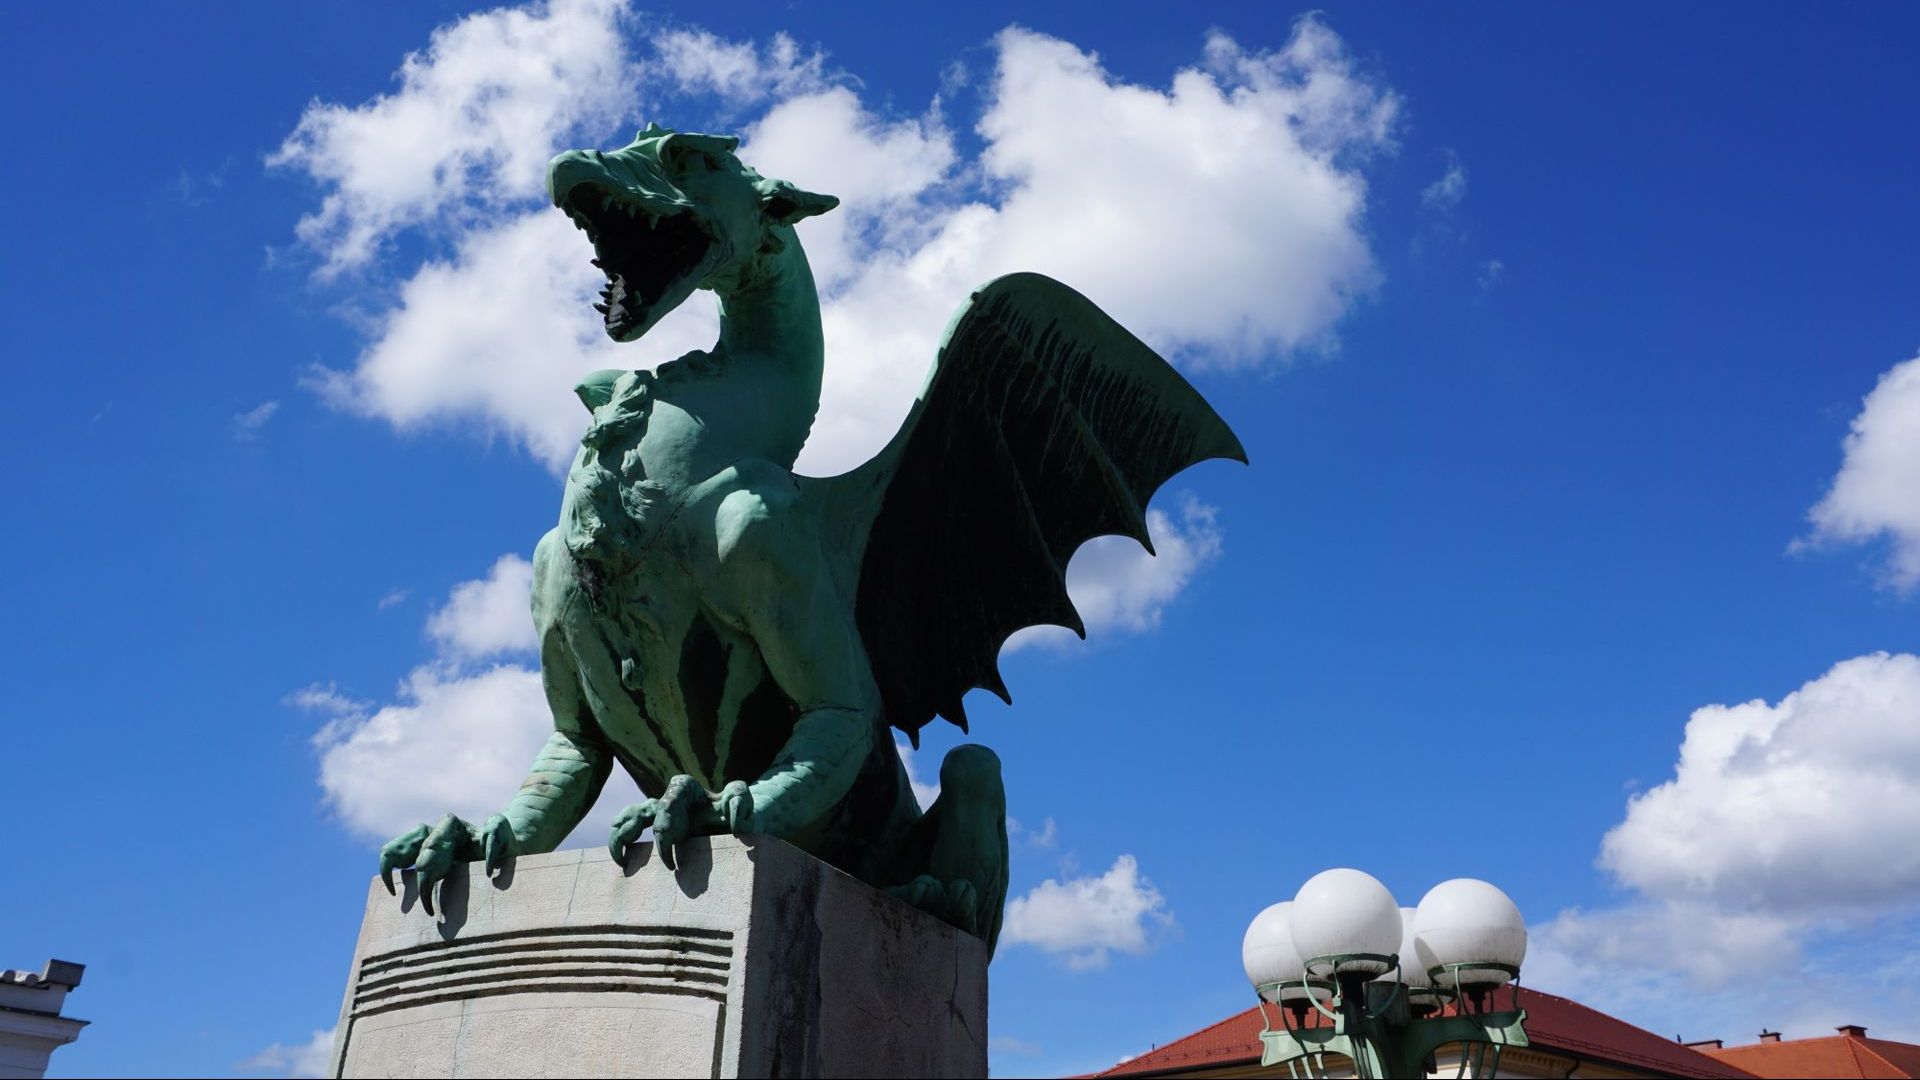 Die Symbolik des Drachens in Ljubljana